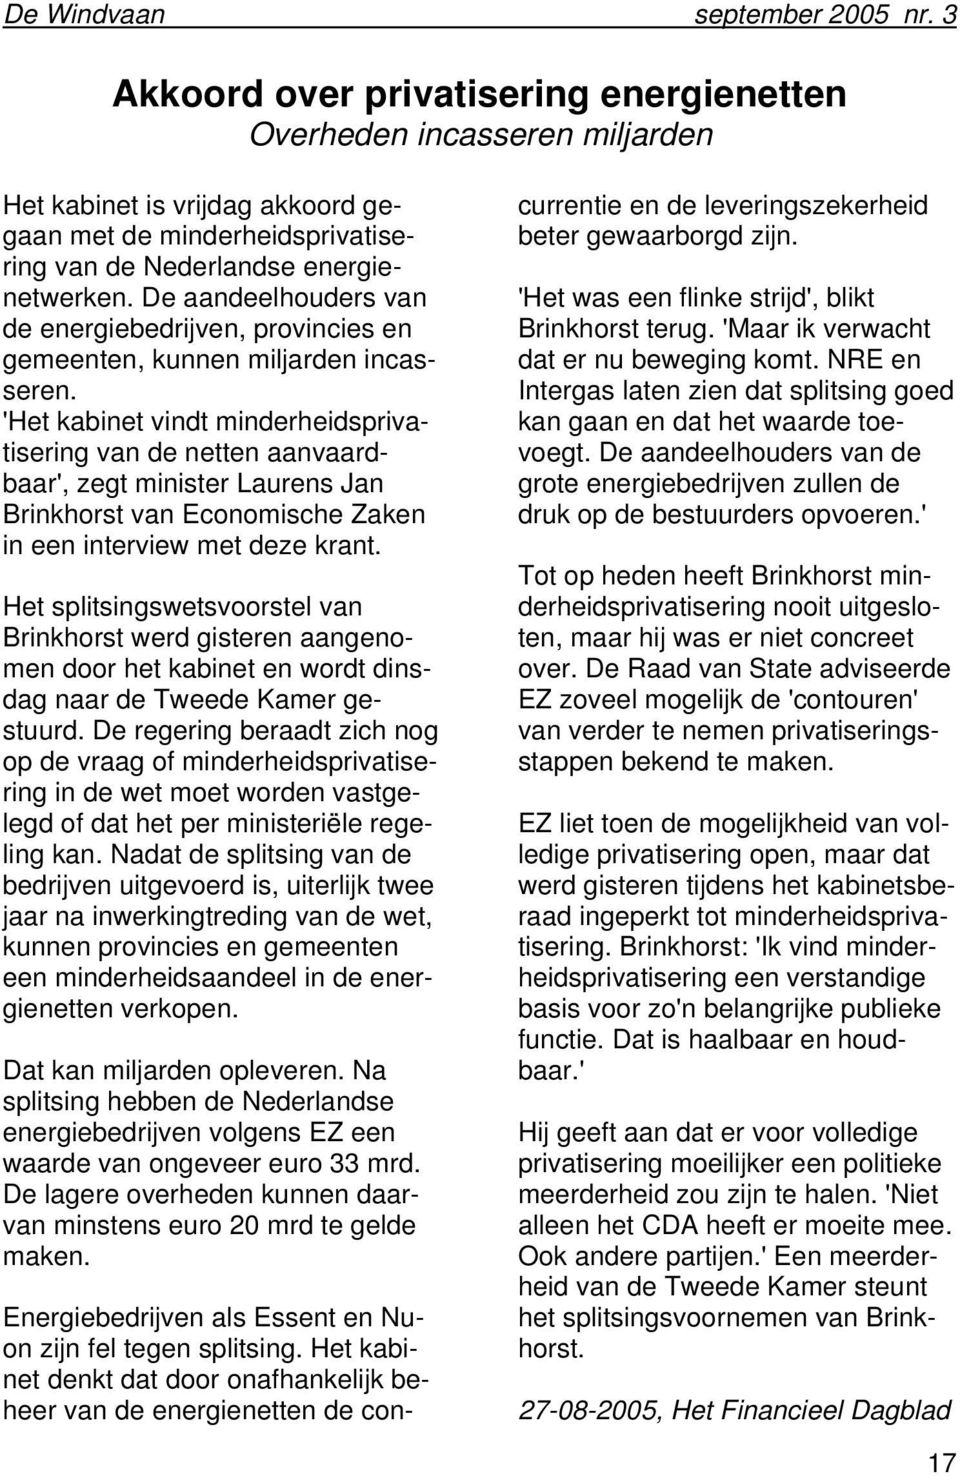 'Het kabinet vindt minderheidsprivatisering van de netten aanvaardbaar', zegt minister Laurens Jan Brinkhorst van Economische Zaken in een interview met deze krant.